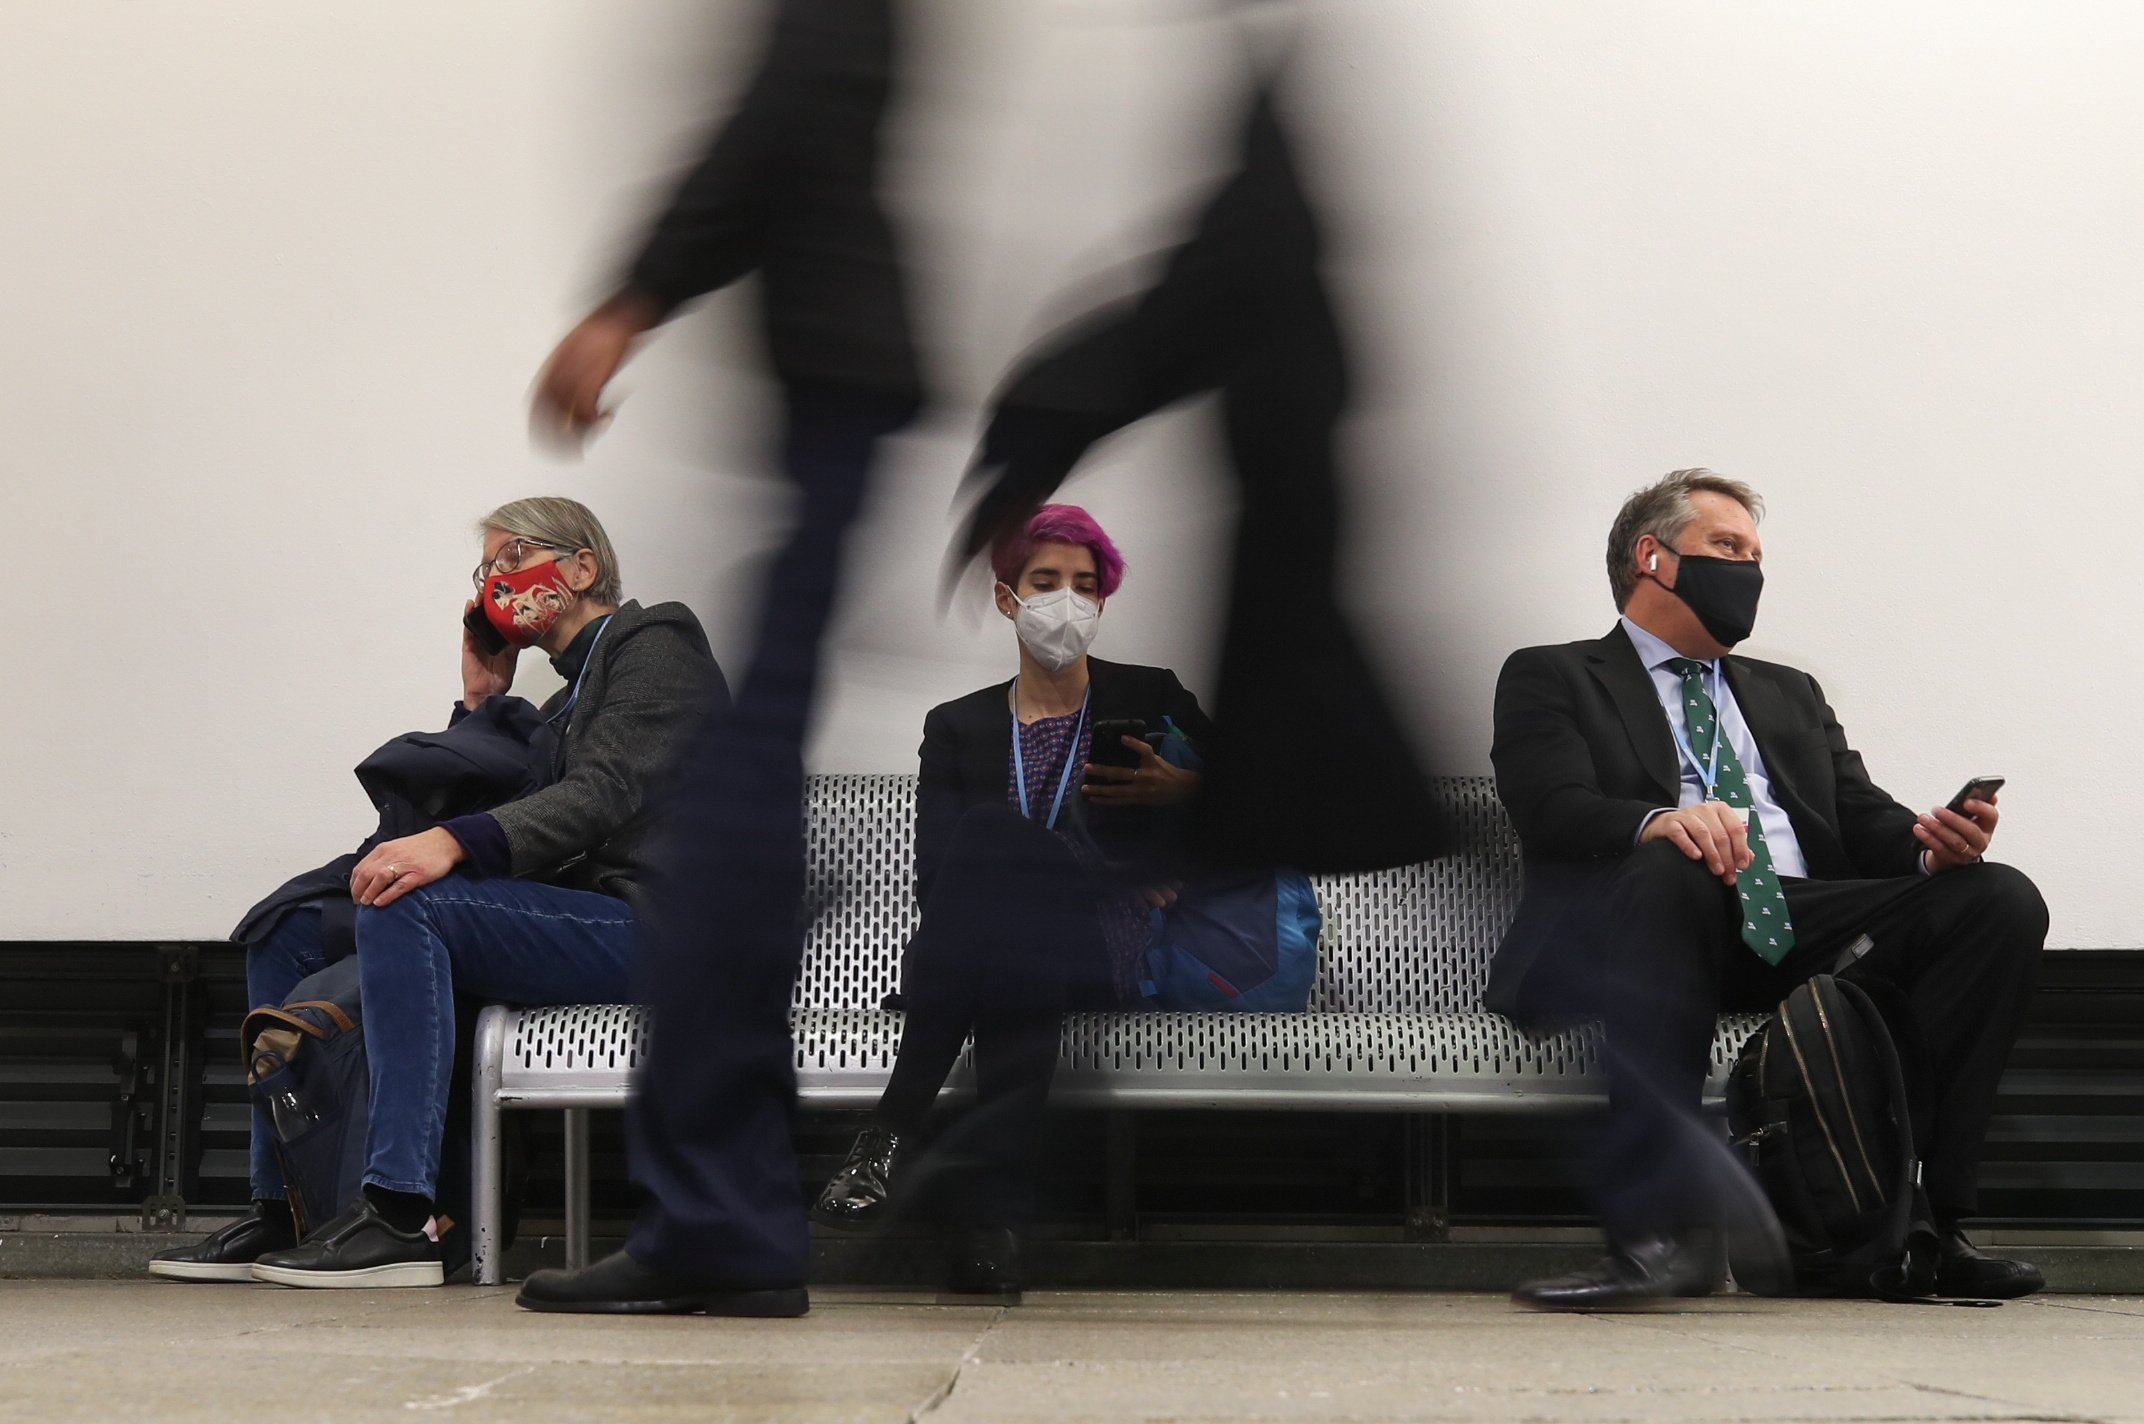 Delegasi beristirahat saat orang-orang berjalan melewati Konferensi Perubahan Iklim PBB (COP26), di Glasgow, Skotlandia, Inggris, 8 November 2021. (Foto Reuters)